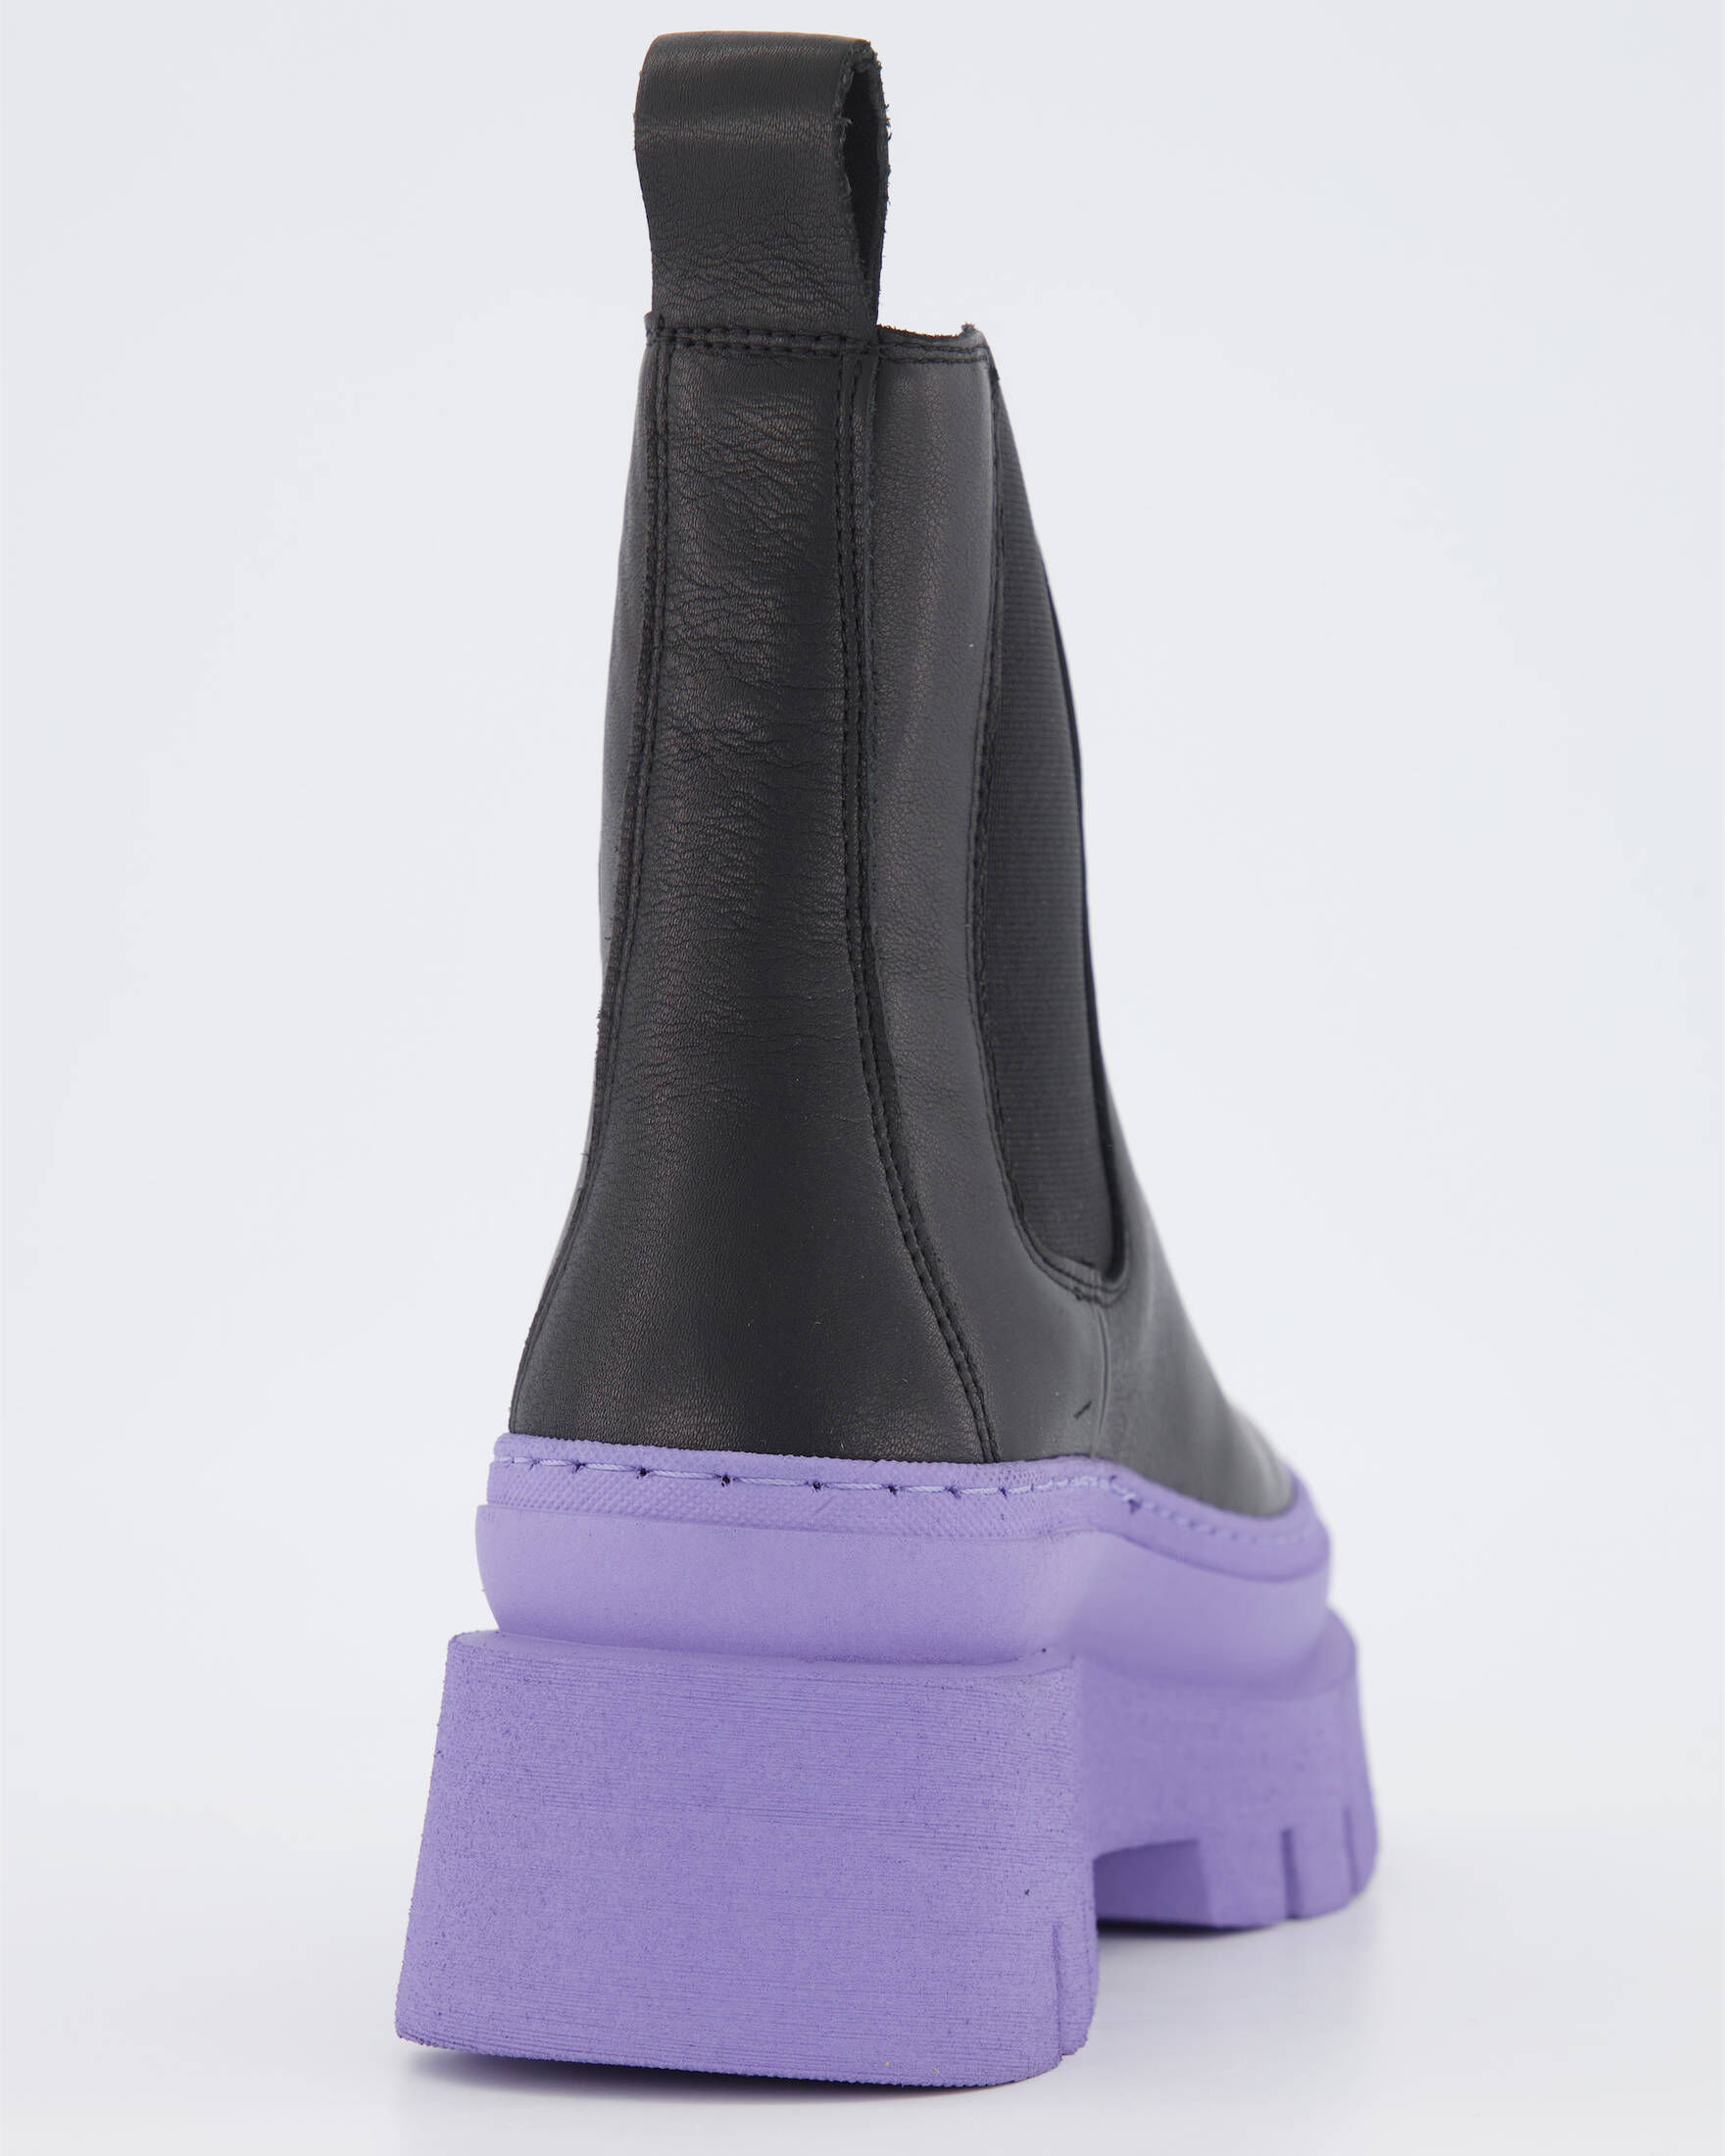 Violet ist ein stylischer Damen-Chelsea-Stiefel mit einem farbenfrohen  Touch. Mit blauen oder roten elastischen Zwickeln und einem Futter mit  Paisley-Muster ist Violet in verschiedenen Optionen erhältlich, darunter  Kalbs- und Wildleder.